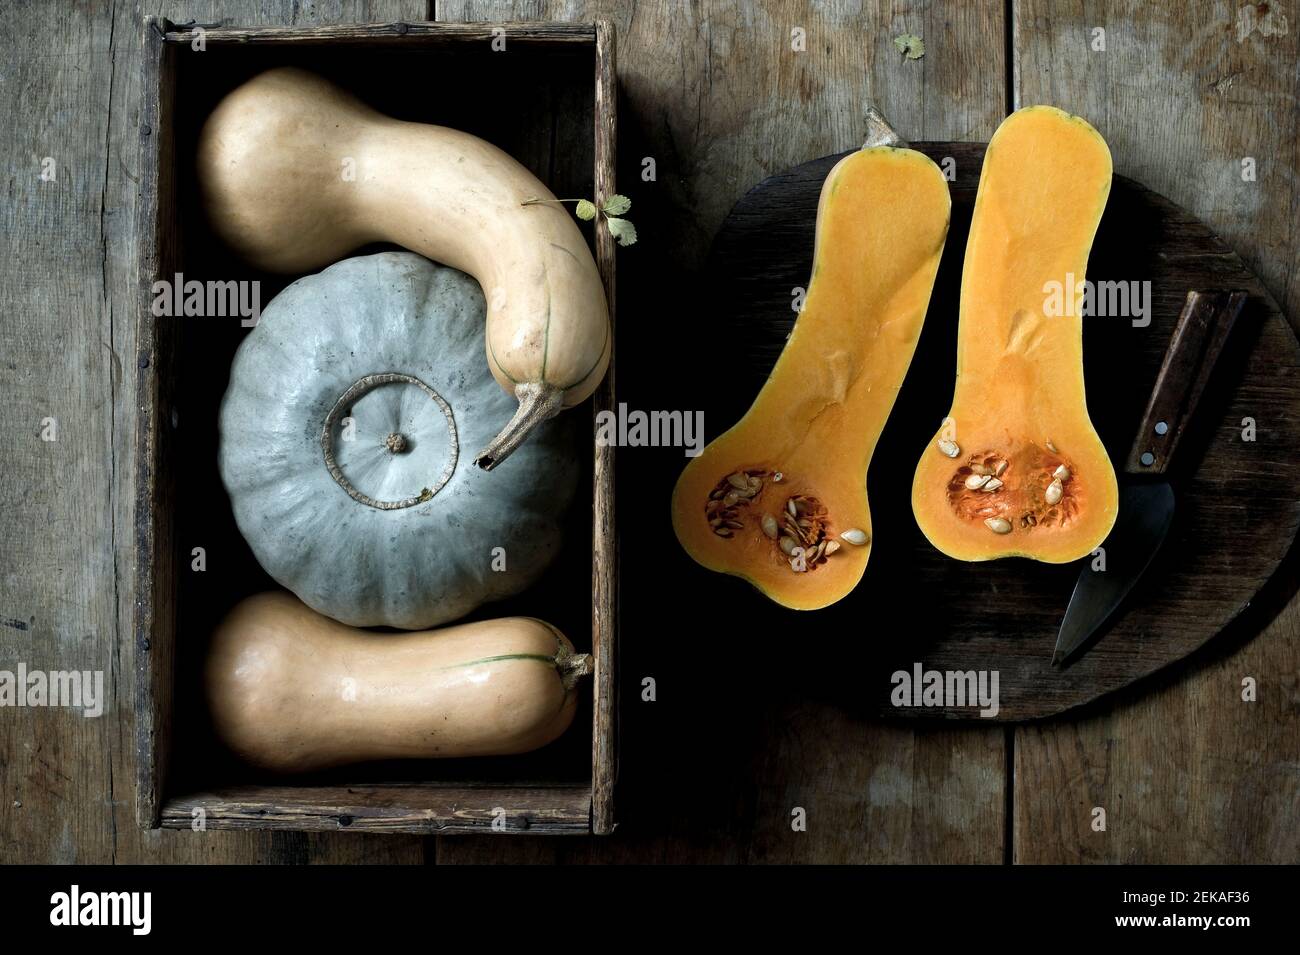 Butternut pumpkins (Cucurbita moschata) cut in halves and Crown Prince pumpkin (Cucurbita maxima) against rustic background Stock Photo